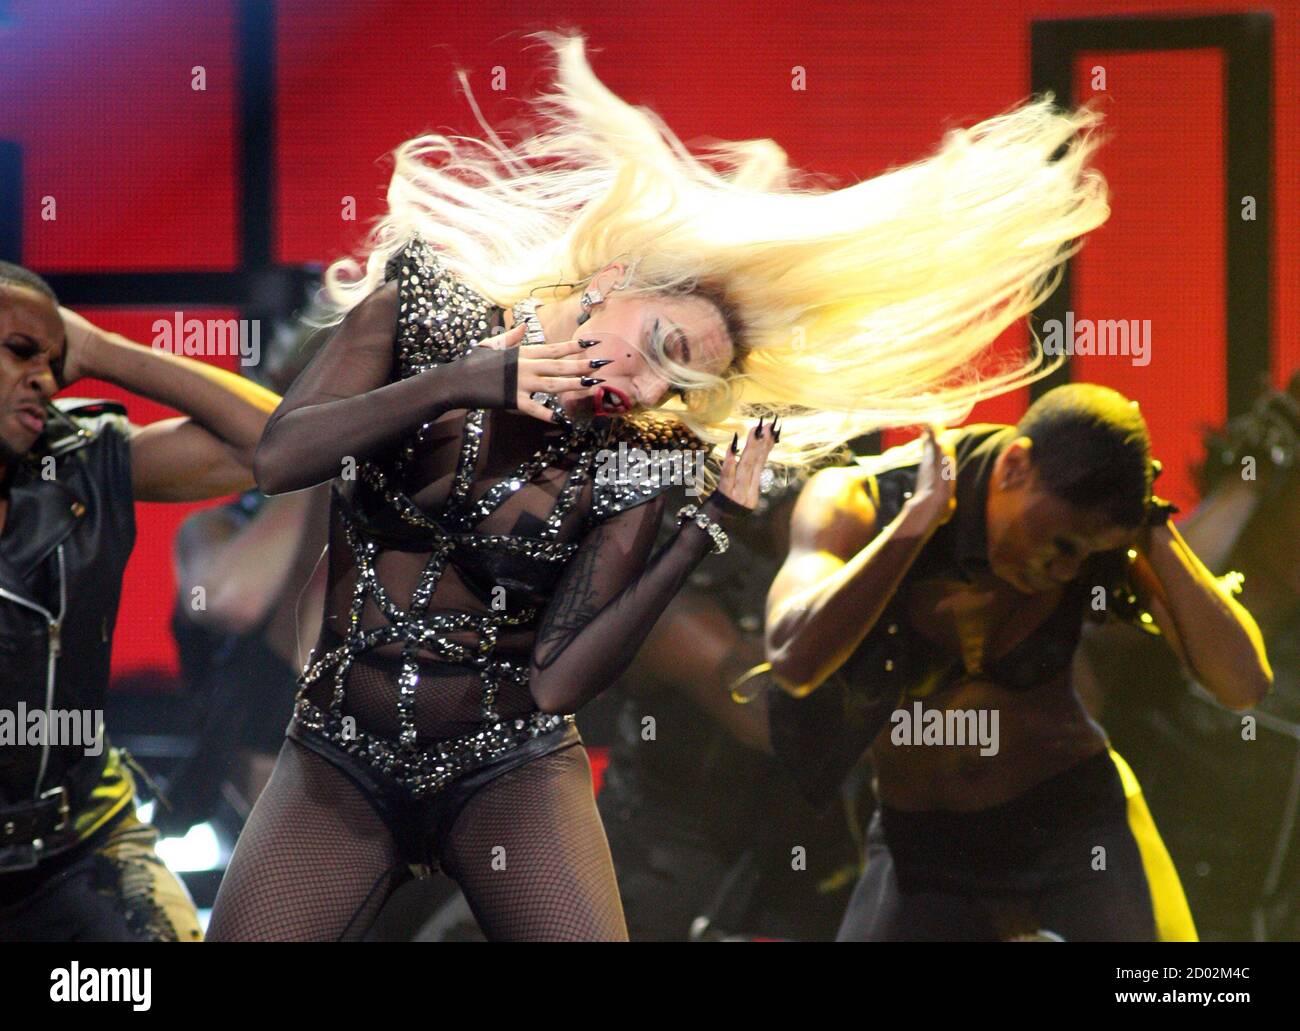 Lady Gaga führt während des zweiten Tages der iHeartRadio Music Festival in der MGM Grand Garden Arena in Las Vegas, Nevada 24. September 2011. Das Fest markiert den offiziellen Start von iHeartRadio, Clear Channel kostenlose Digitalradio Produkt mehr als 800 Rundfunk und digitalen Sender aus 150 Städten verbinden. REUTERS/Steve Marcus (Vereinigte Staaten - Tags: ENTERTAINMENT) Stockfoto